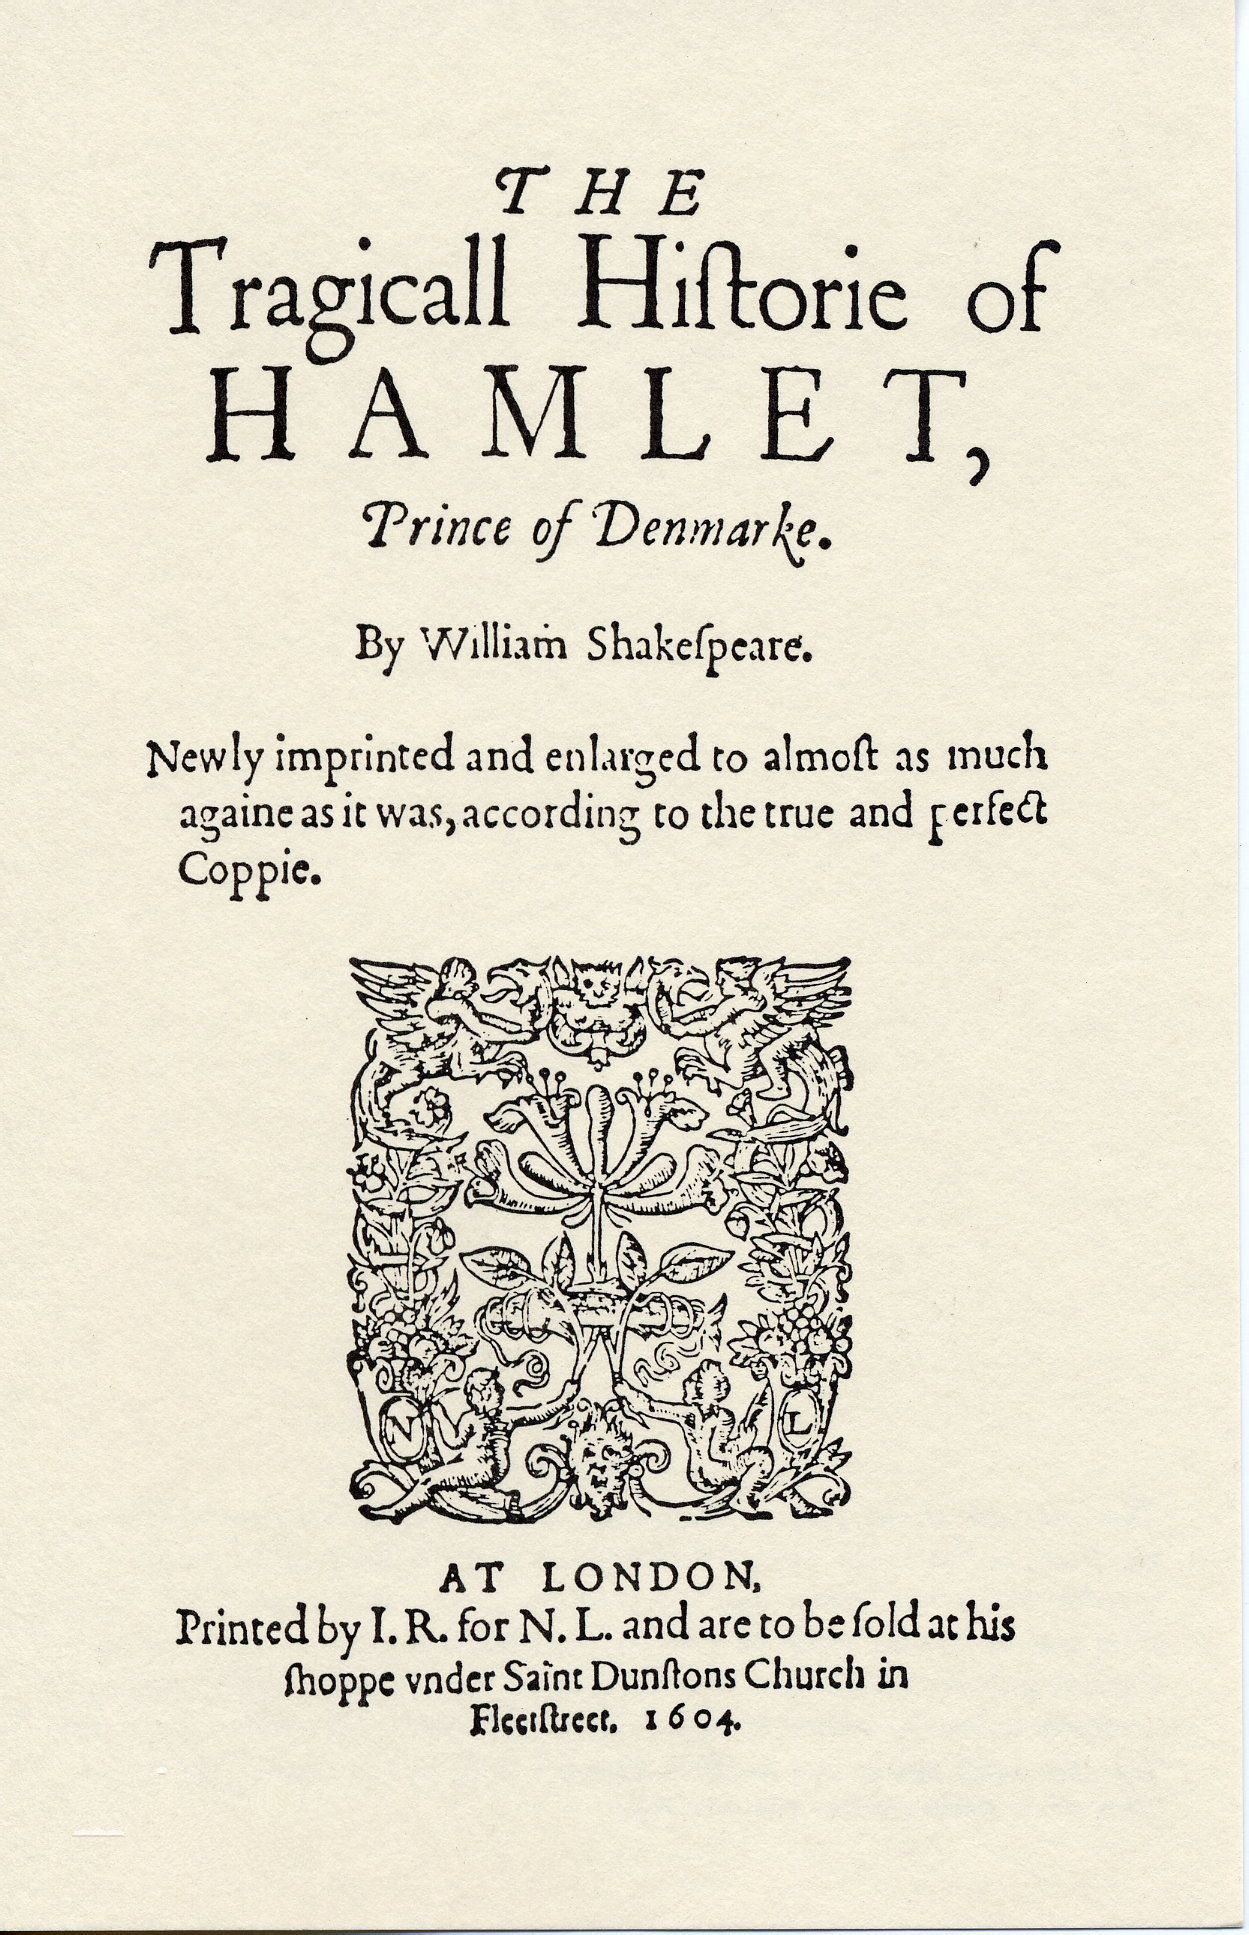 英国国家剧院现场《哈姆雷特》高清放映 | “卷福”版《哈姆雷特》又又又来啦_威廉·莎士比亚